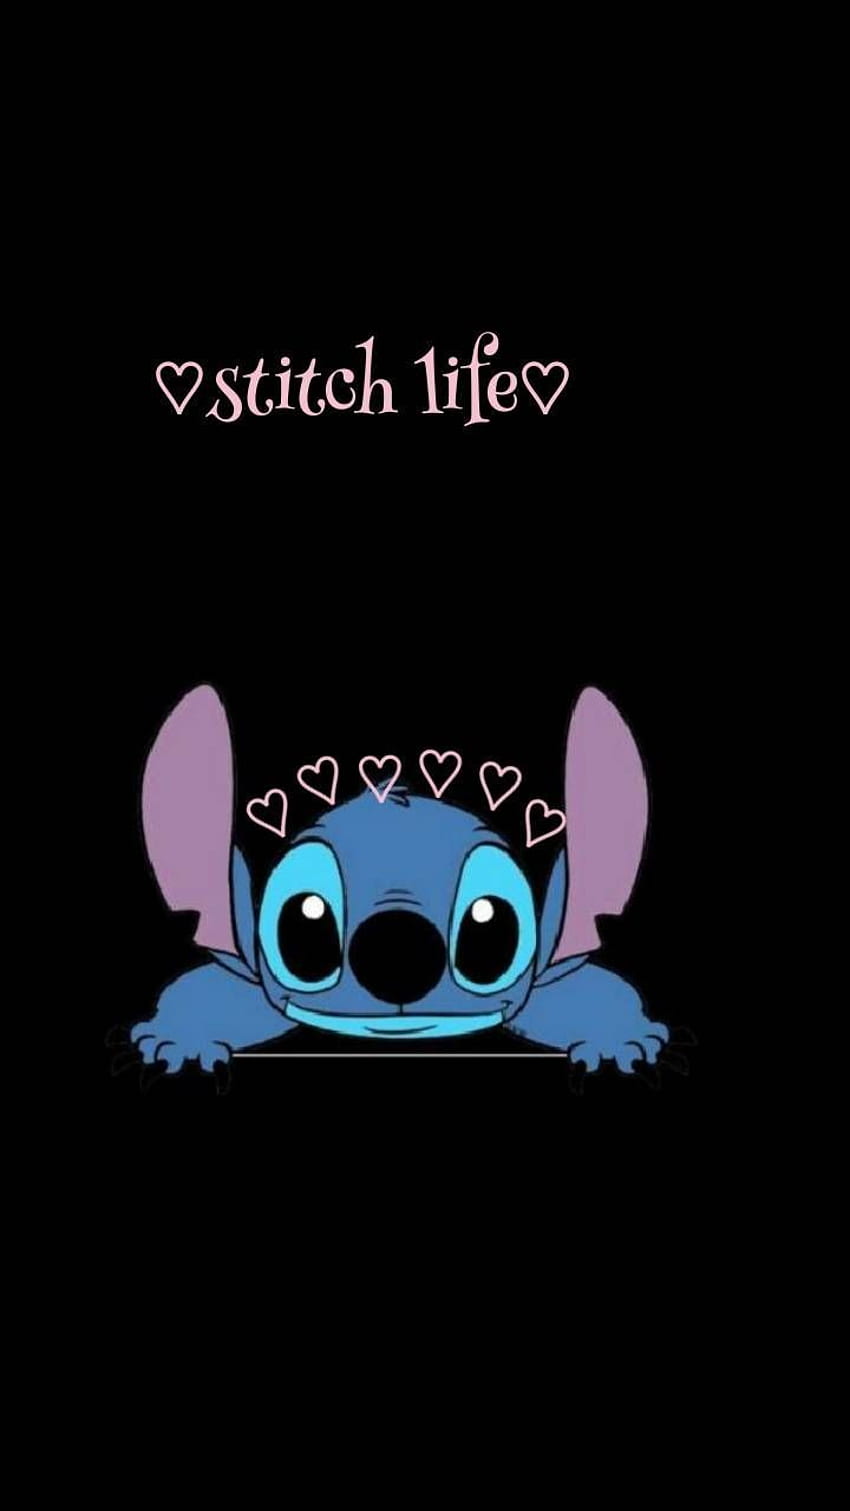 Stitch là một nhân vật trong truyện tranh Disney với tính cách kỳ quặc và độc đáo. Tuy nhiên, bạn sẽ không thể không yêu nhân vật này vì tính cách dễ thương và đáng yêu. Hãy xem hình ảnh để cảm nhận được sự độc đáo và có phần ngốc nghếch của Stitch.